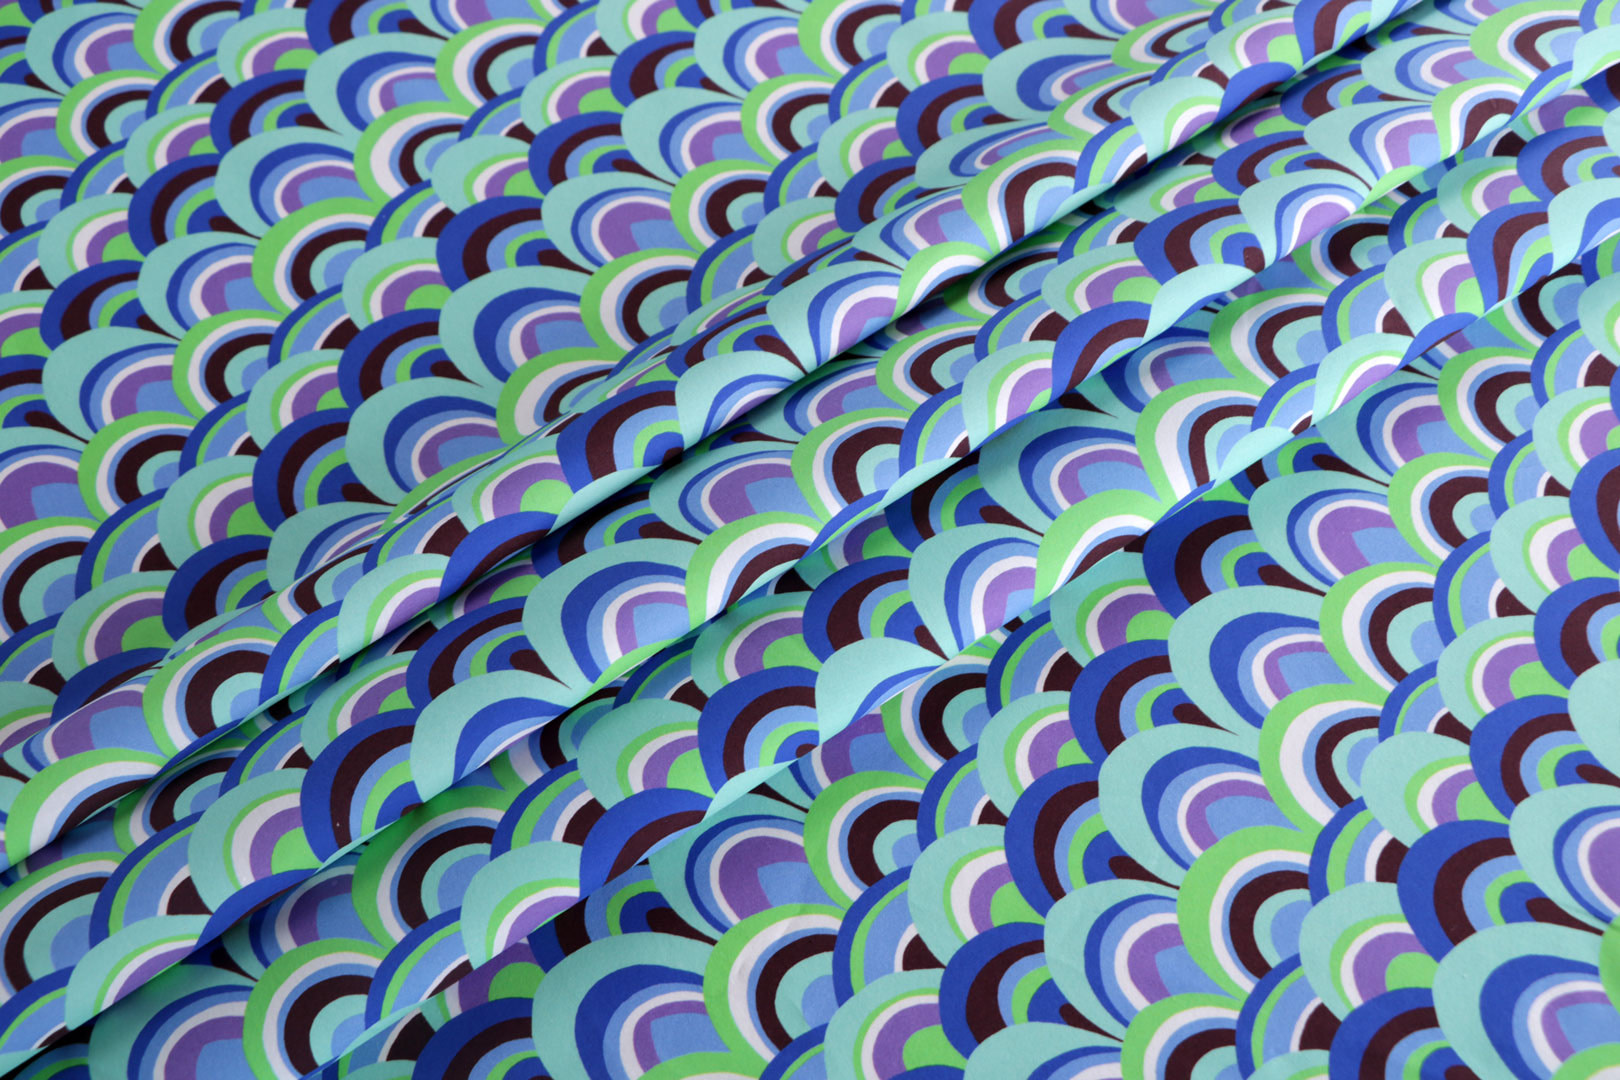 Tessuto Tela di cotone Blu, Multicolore, Verde, Viola in Cotone per Abbigliamento ST000525